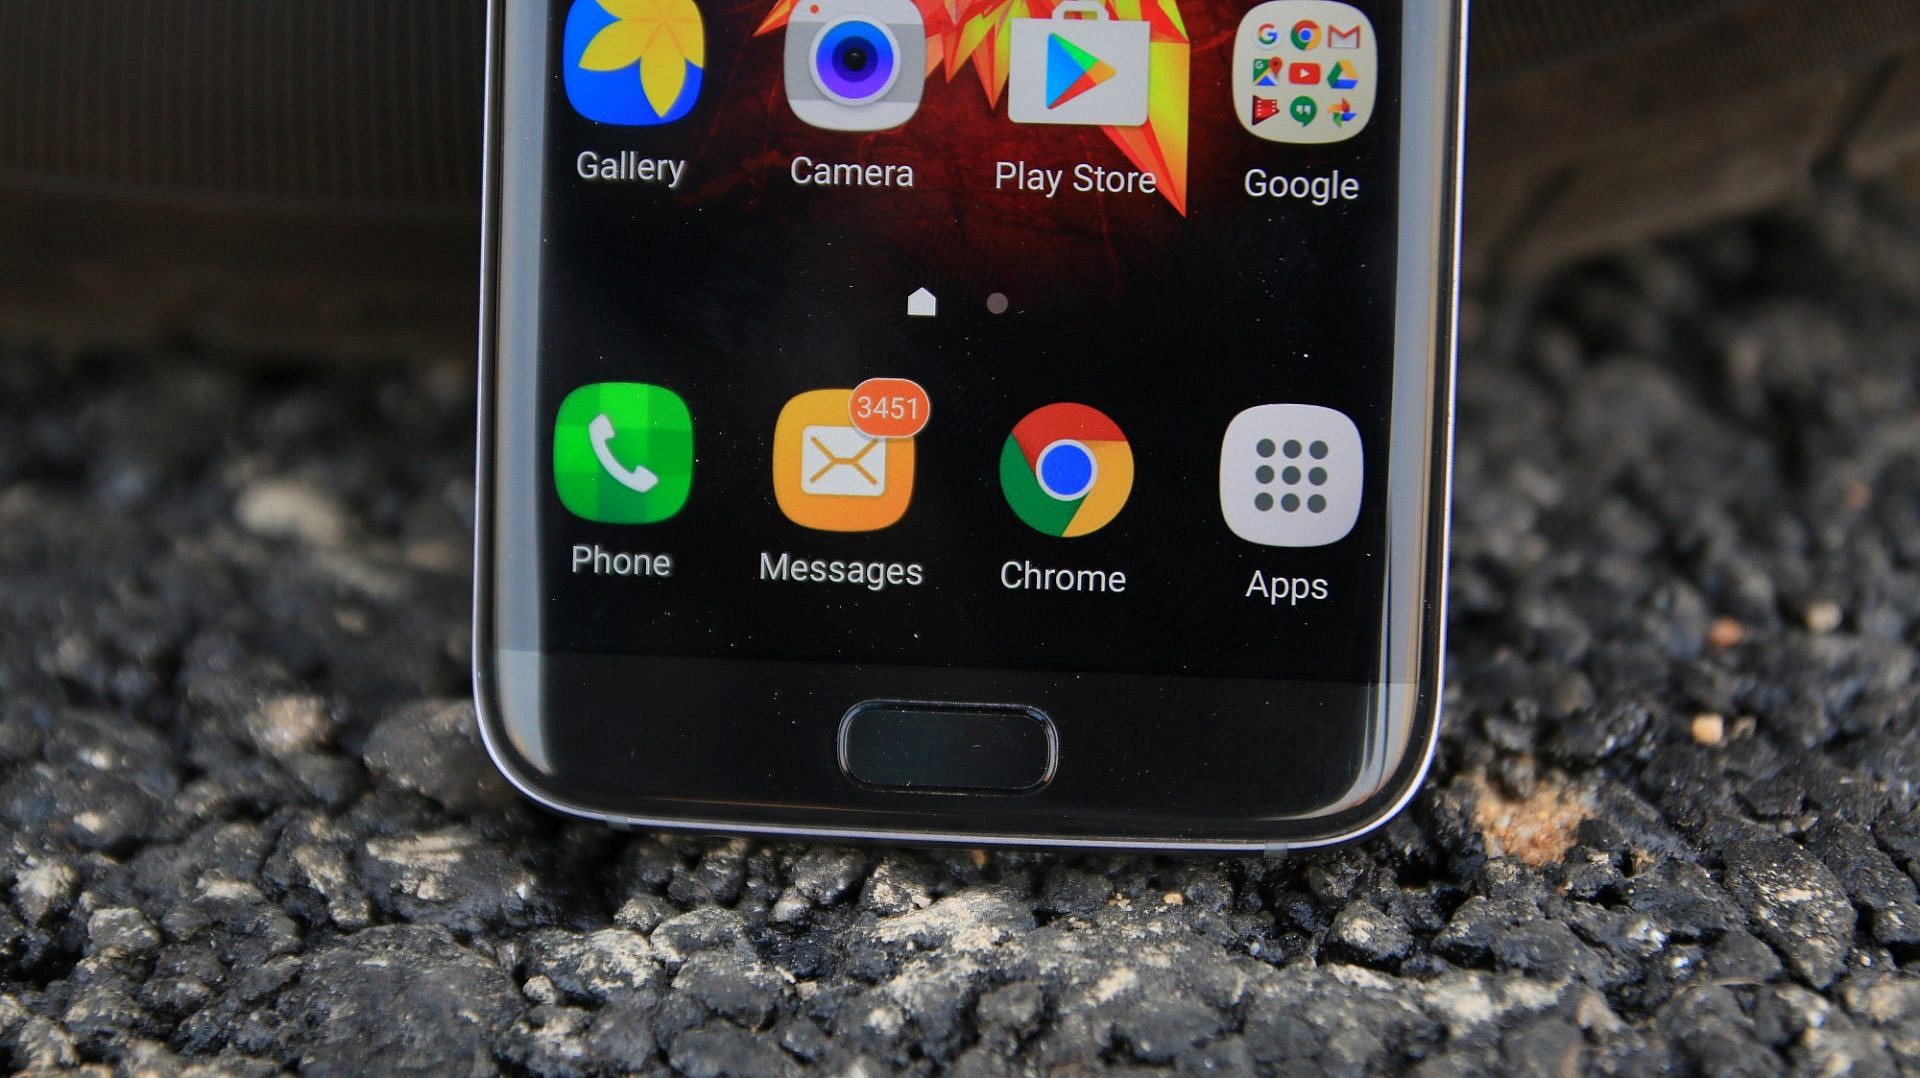 Samsung เผลอปล่อยแอปที่เผยหน้าตาของ Galaxy S8 มาซะงั้น